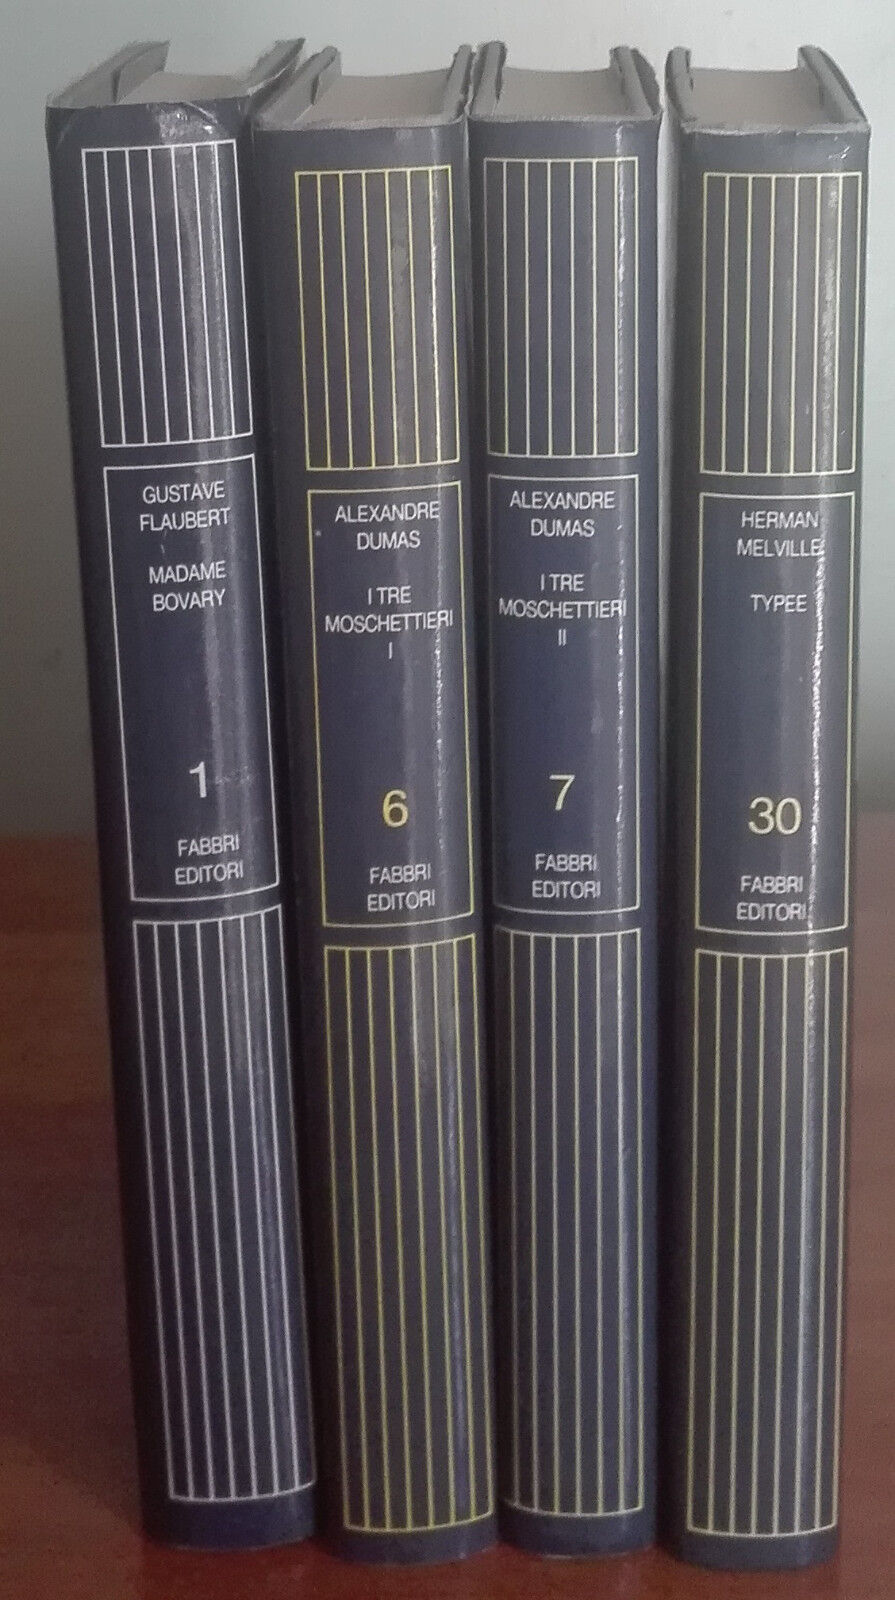 Lotto i grandi della letteratura - Melville, Dumas, Flaubert - Fabbri,1985 - A